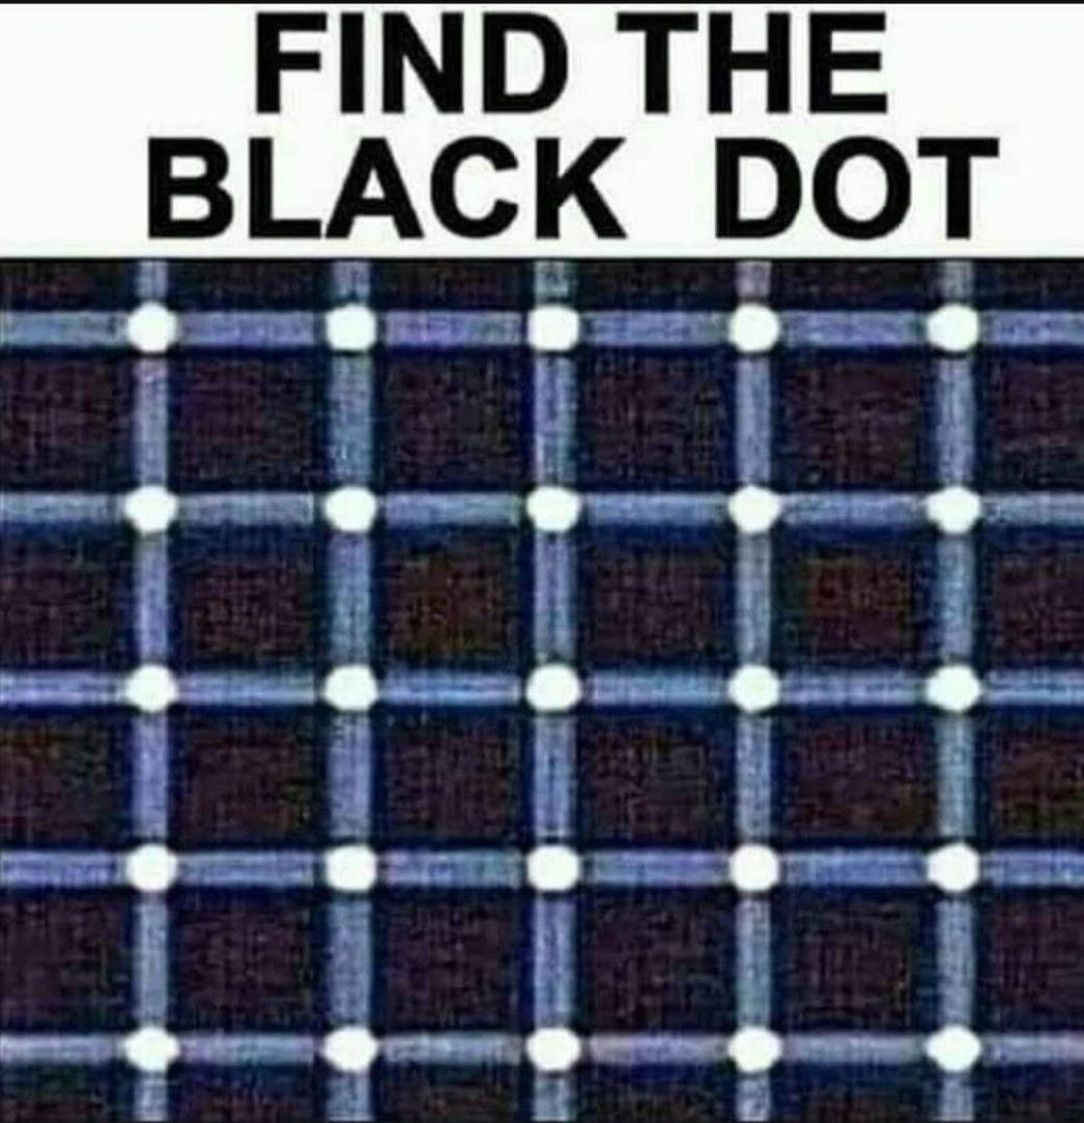 Follow the black dot